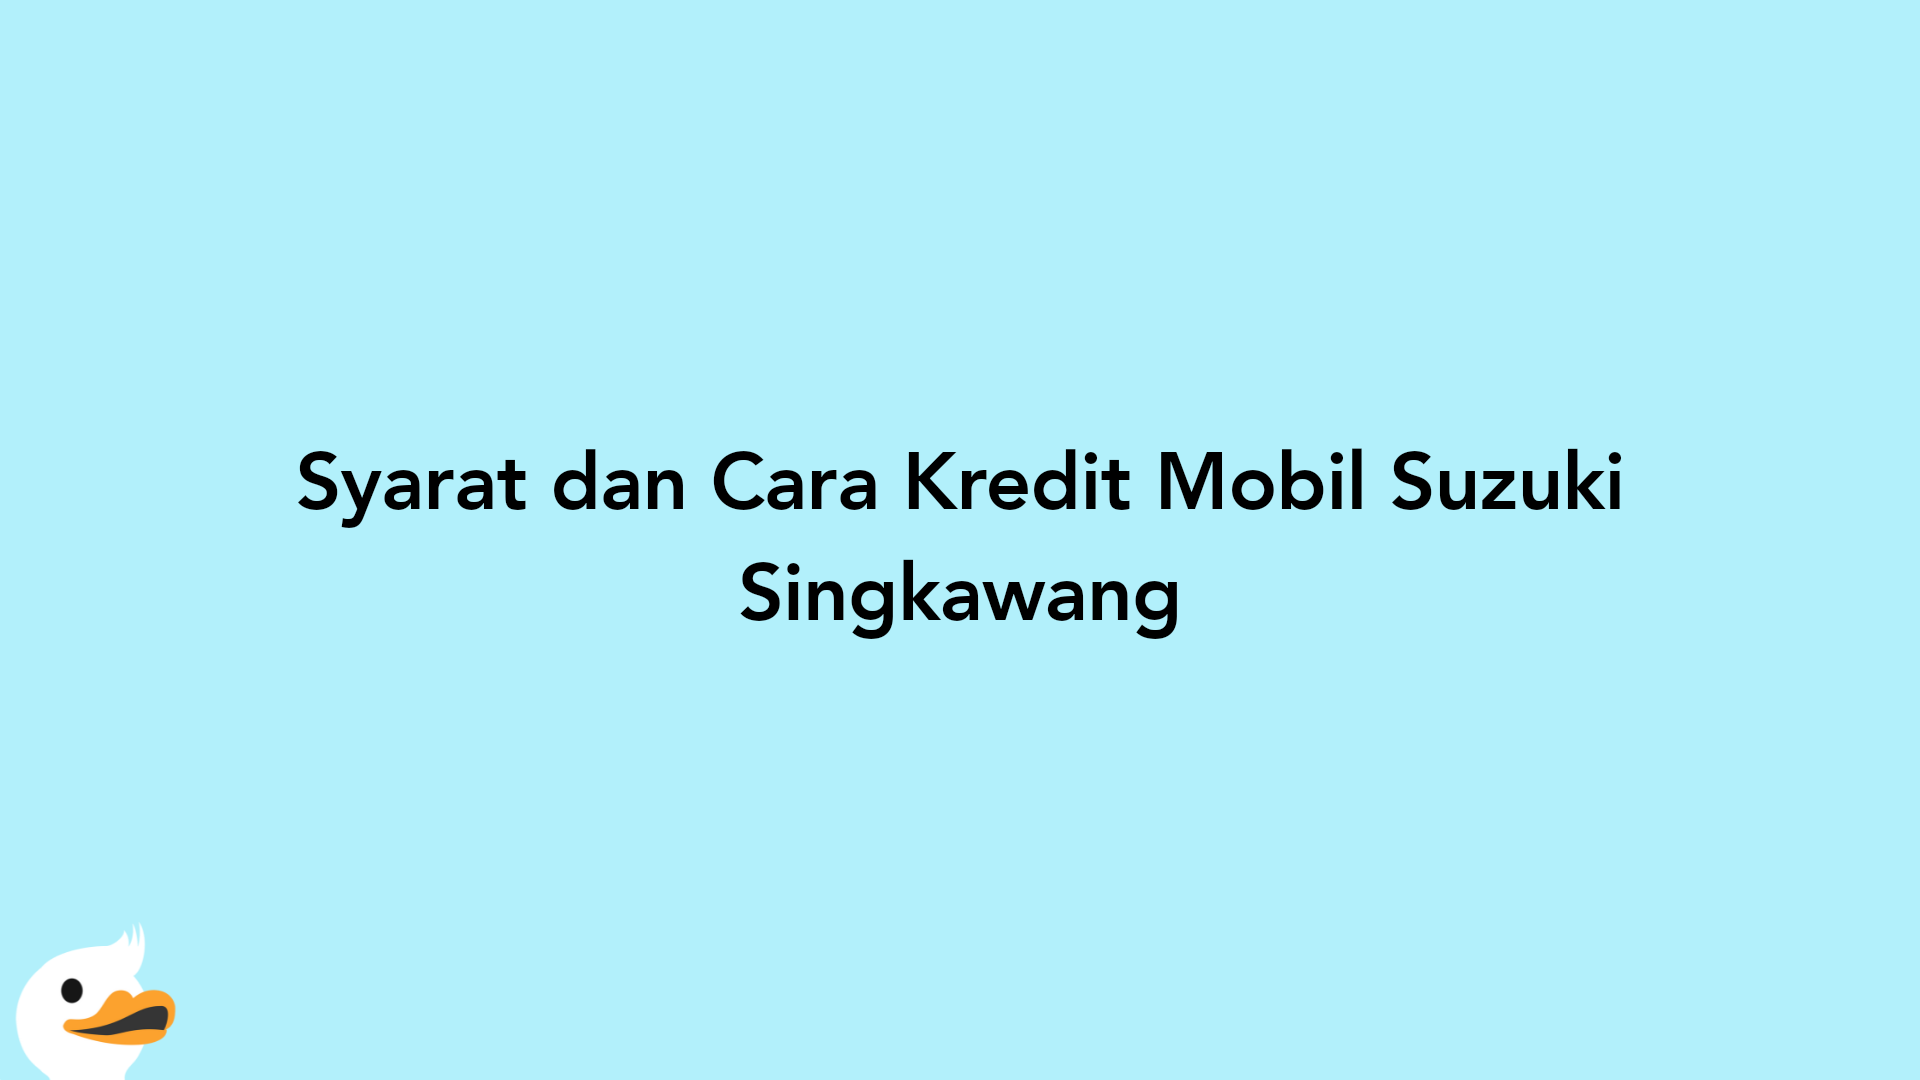 Syarat dan Cara Kredit Mobil Suzuki Singkawang